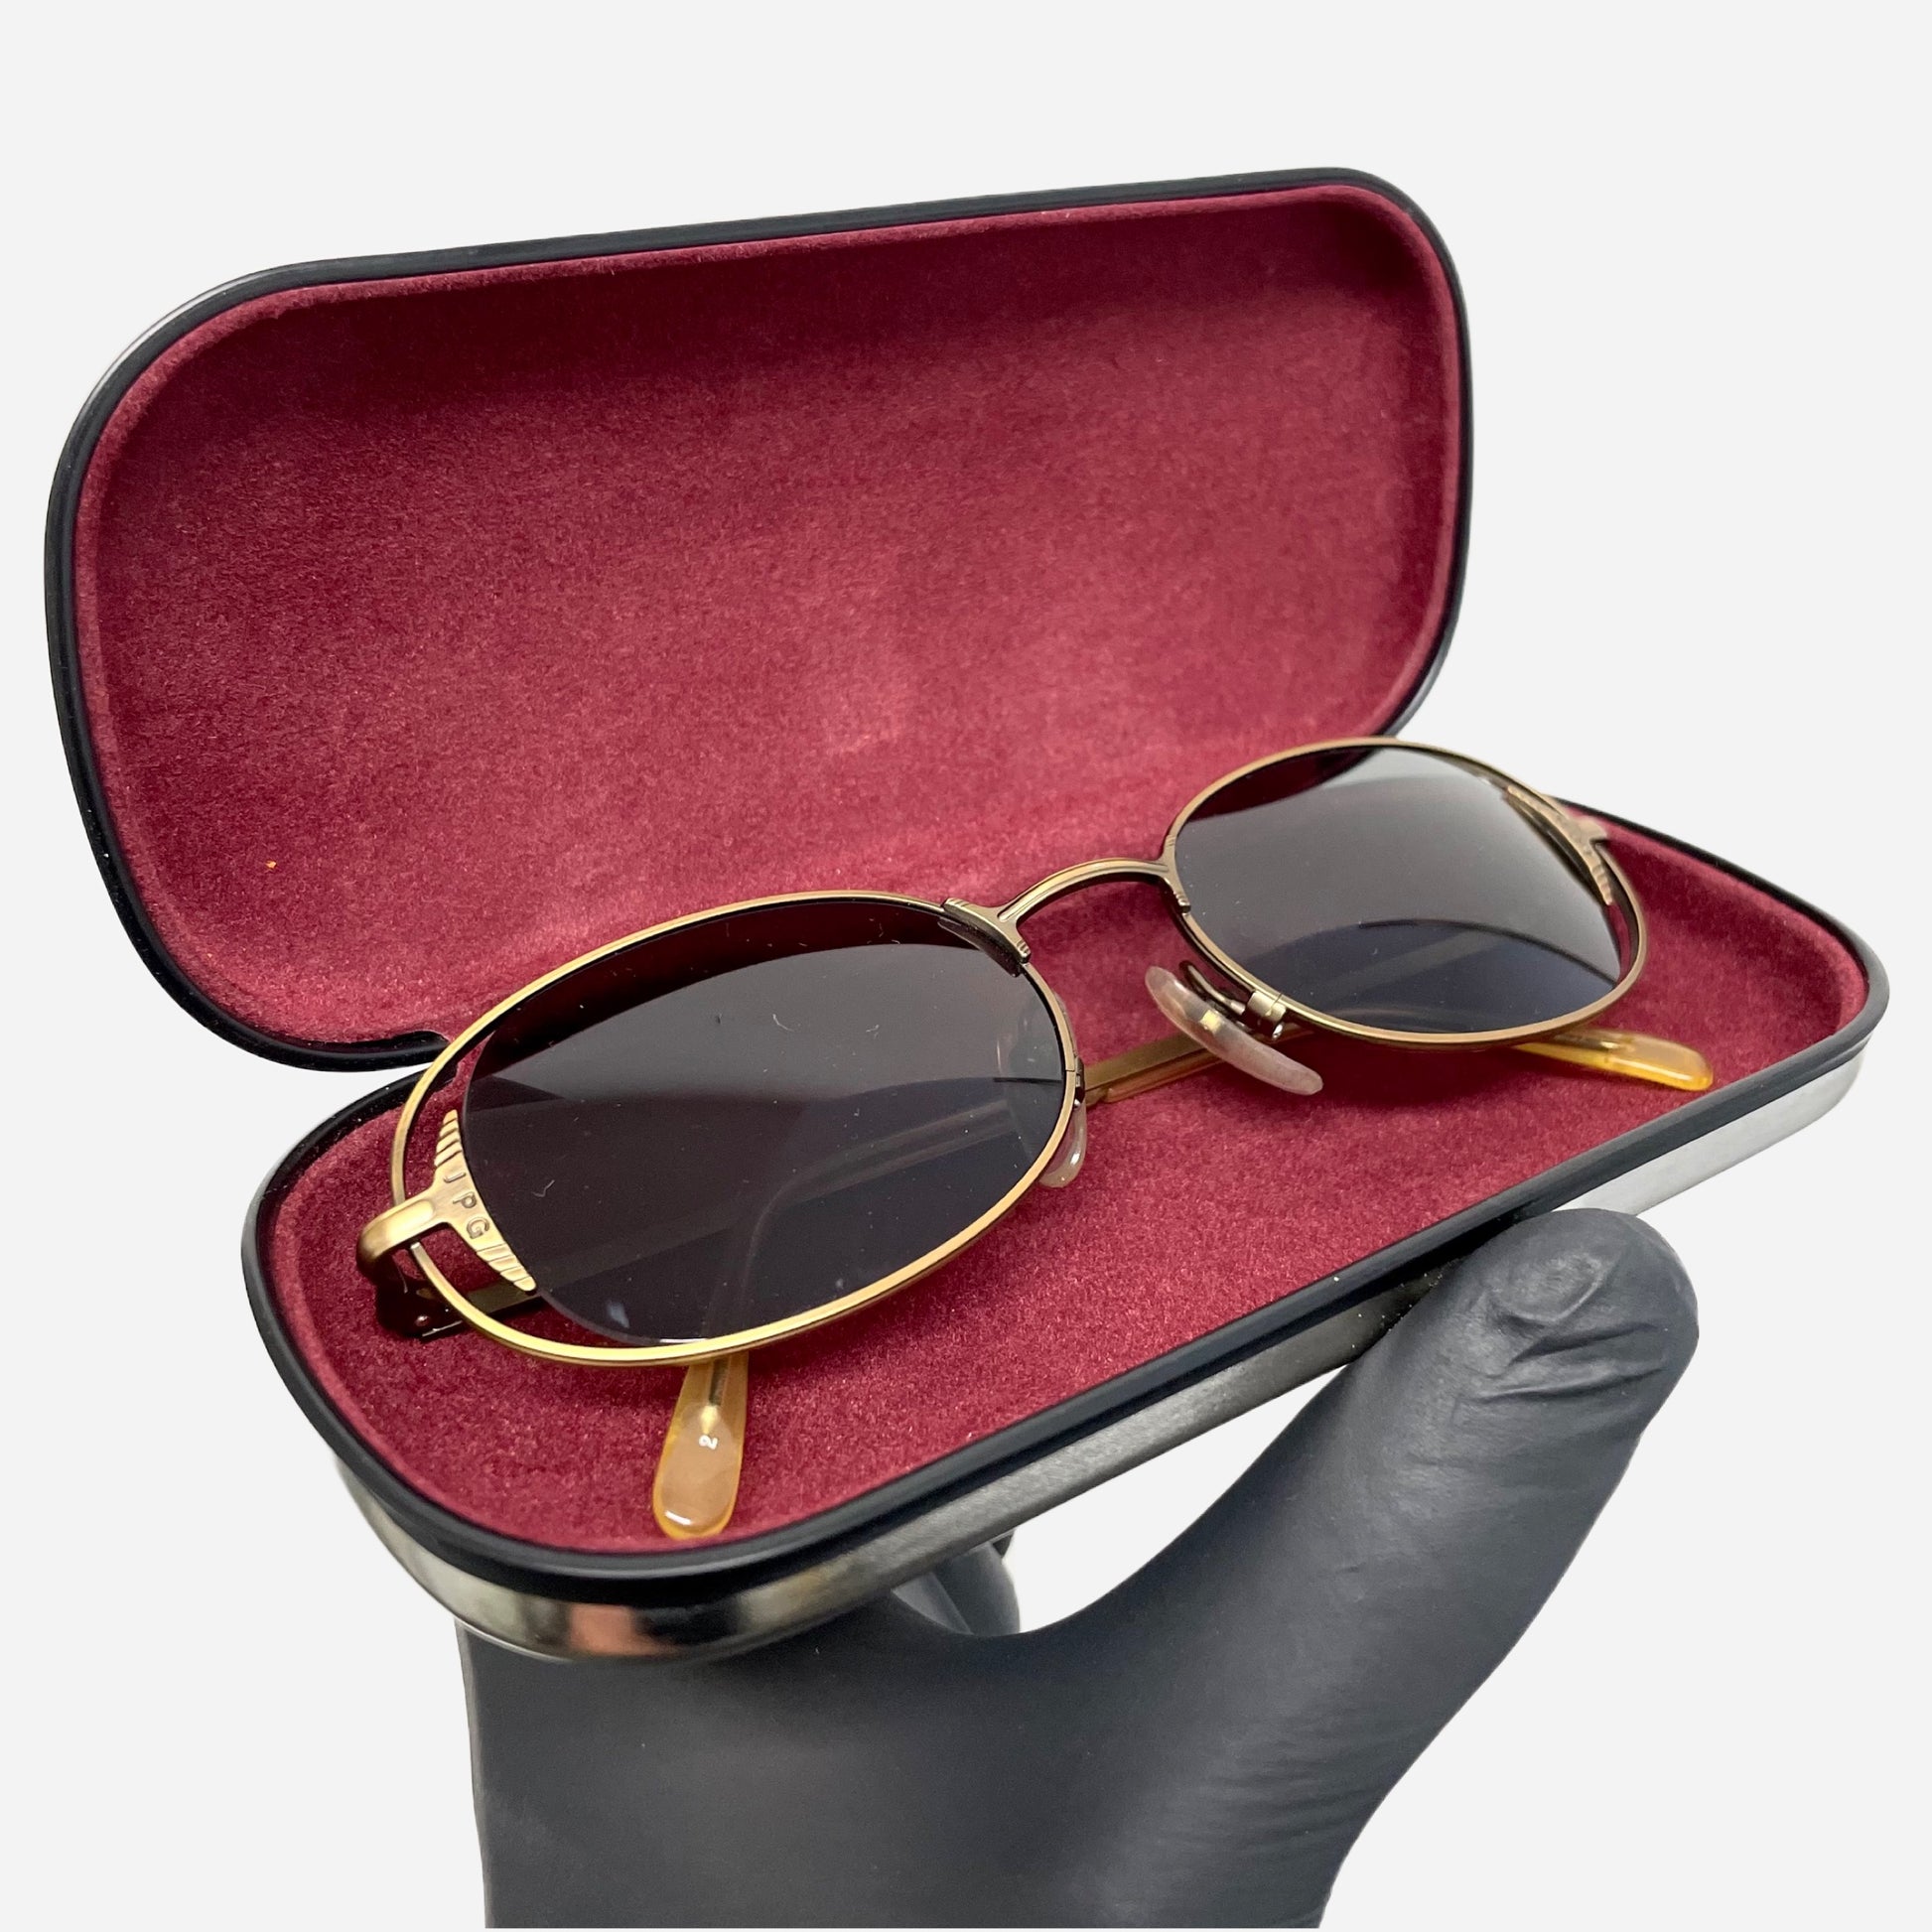 Vintage-Jean-Paul-Gaultier-Sonnenbrille-Sunglasses-Model56-3172-made-in-japan-the-seekers-jpg-case-open